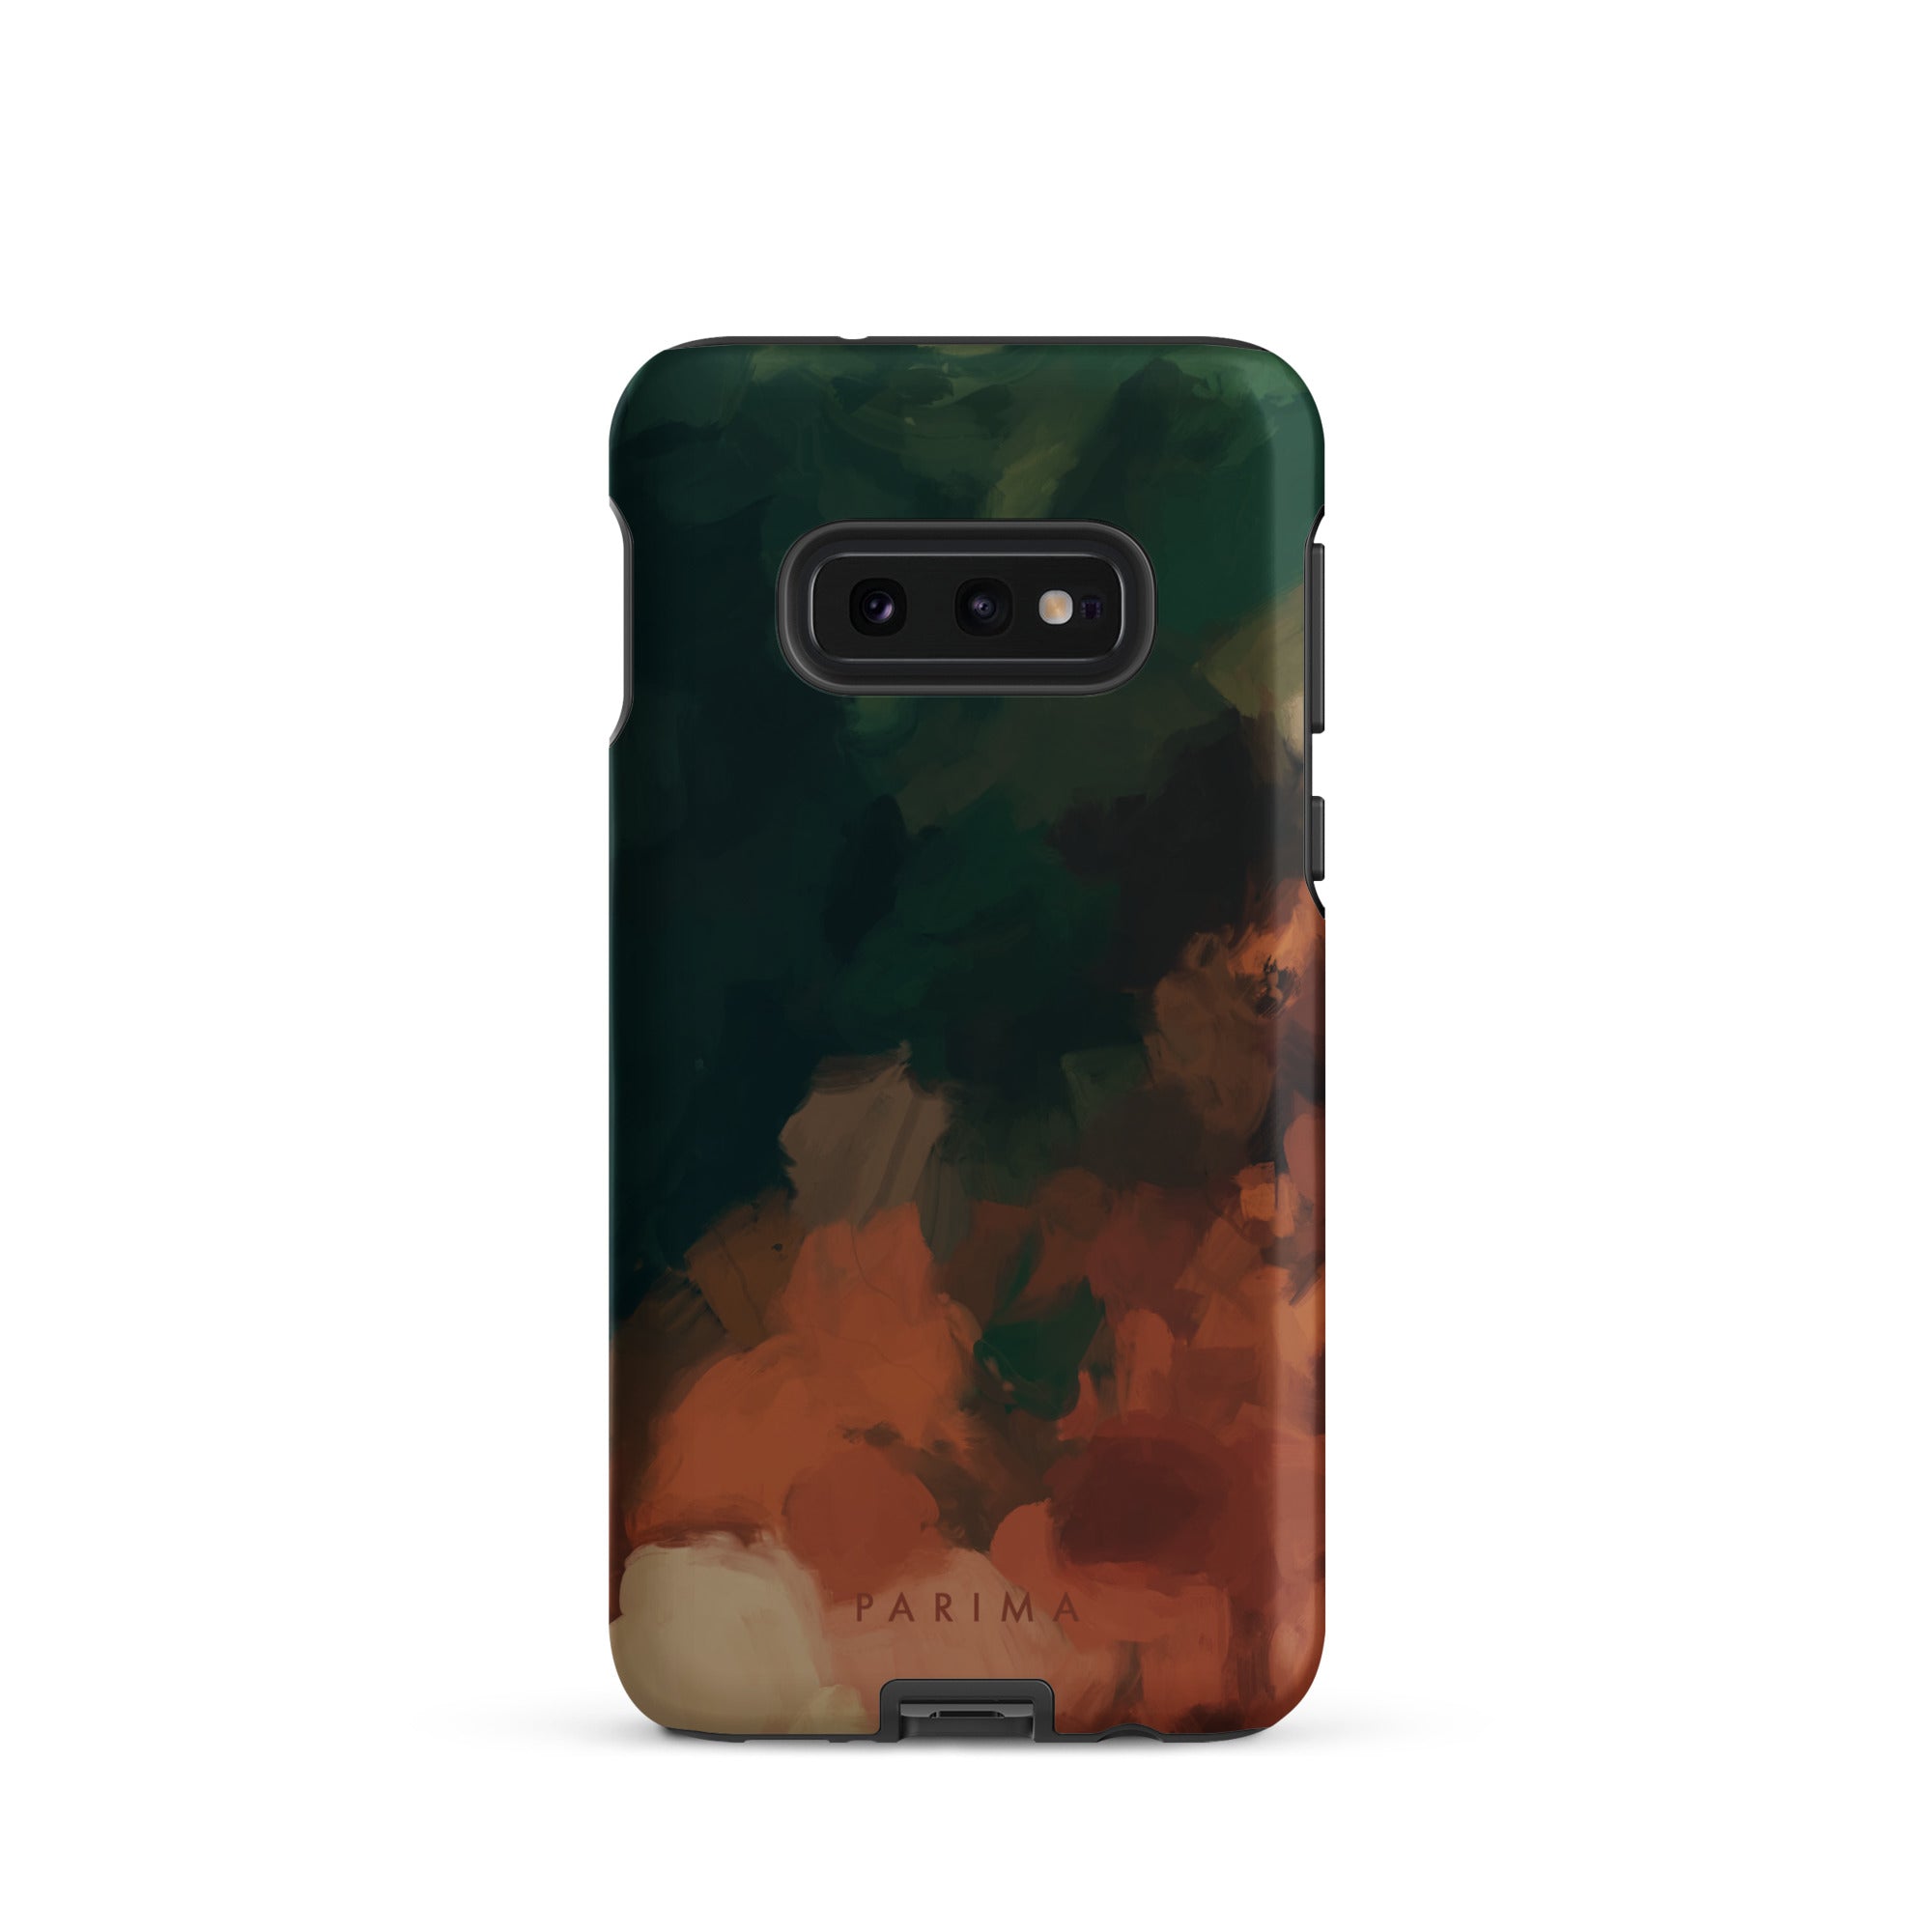 Cedar, green and brown abstract art on Samsung Galaxy S10e tough case by Parima Studio